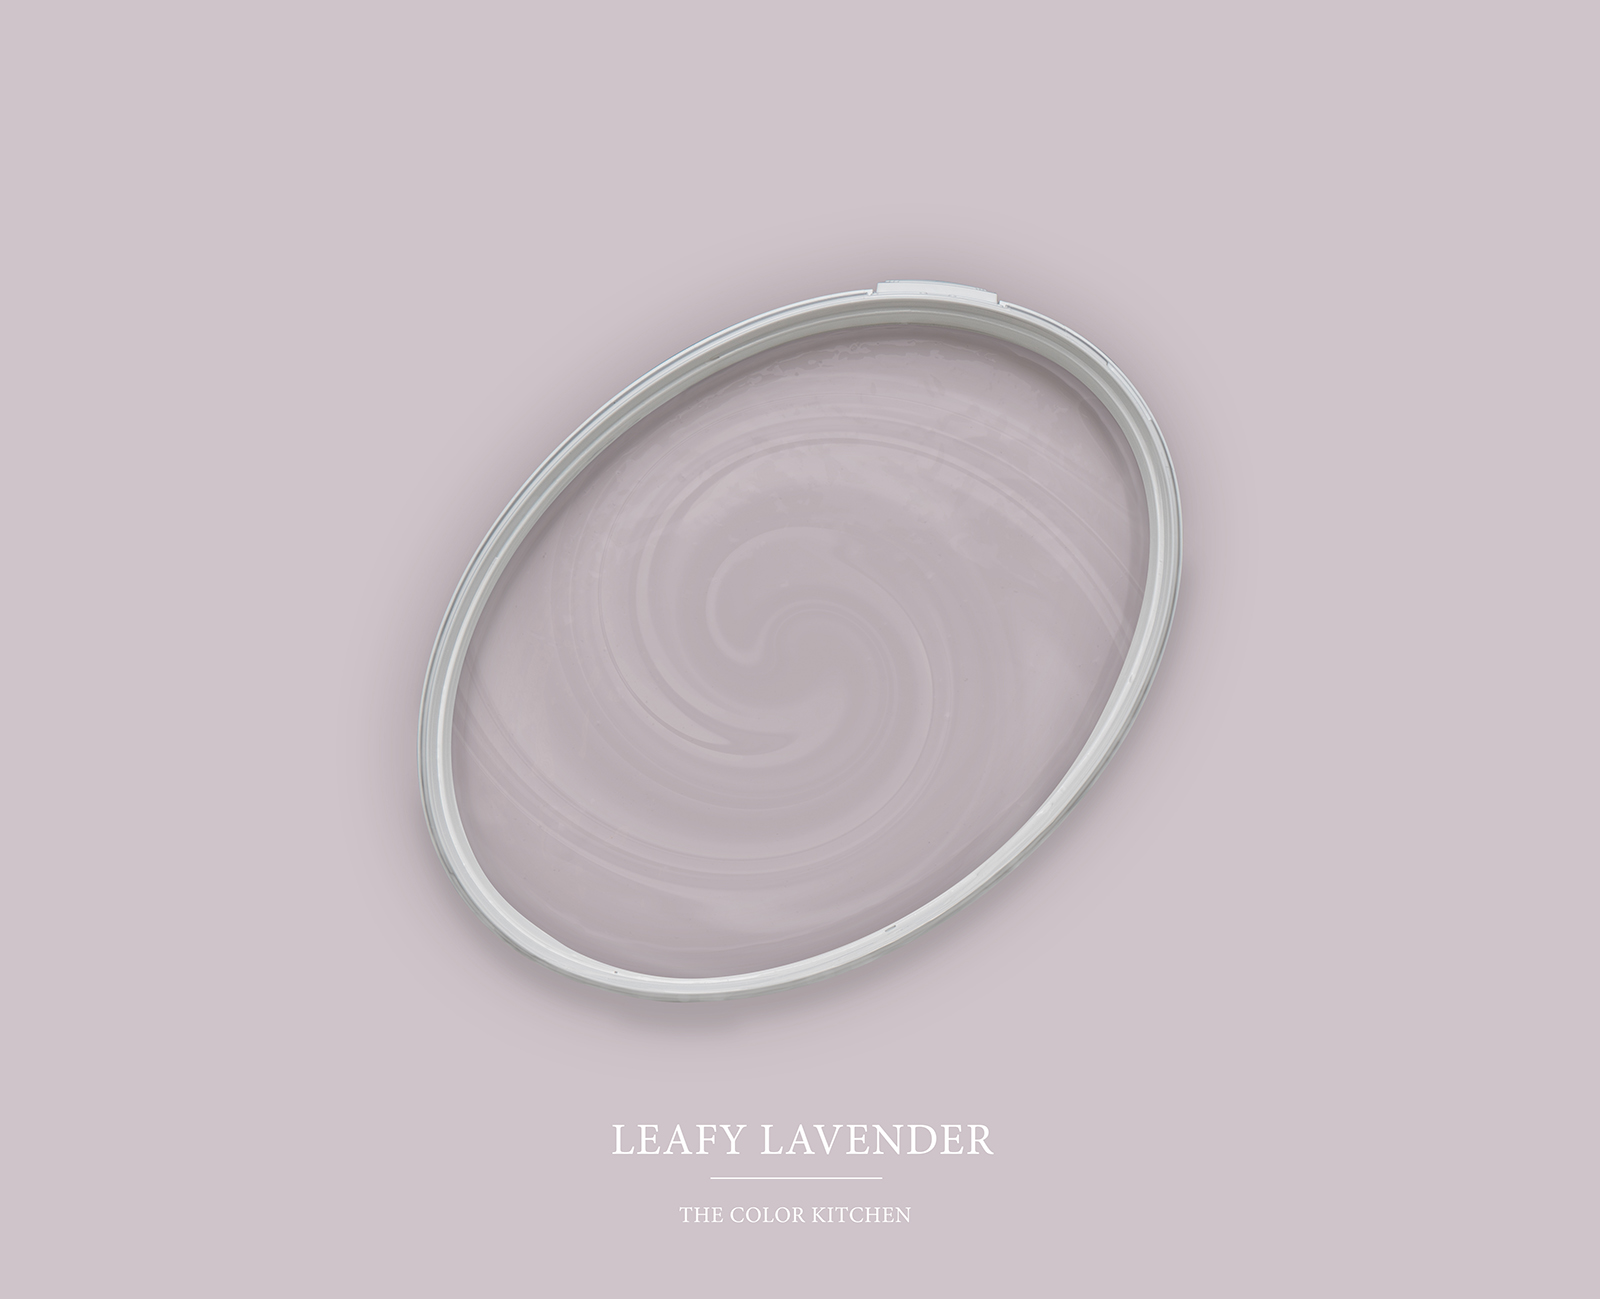         Wandfarbe in kühlem Lavendelton »Leafy Lavender« TCK2004 – 2,5 Liter
    